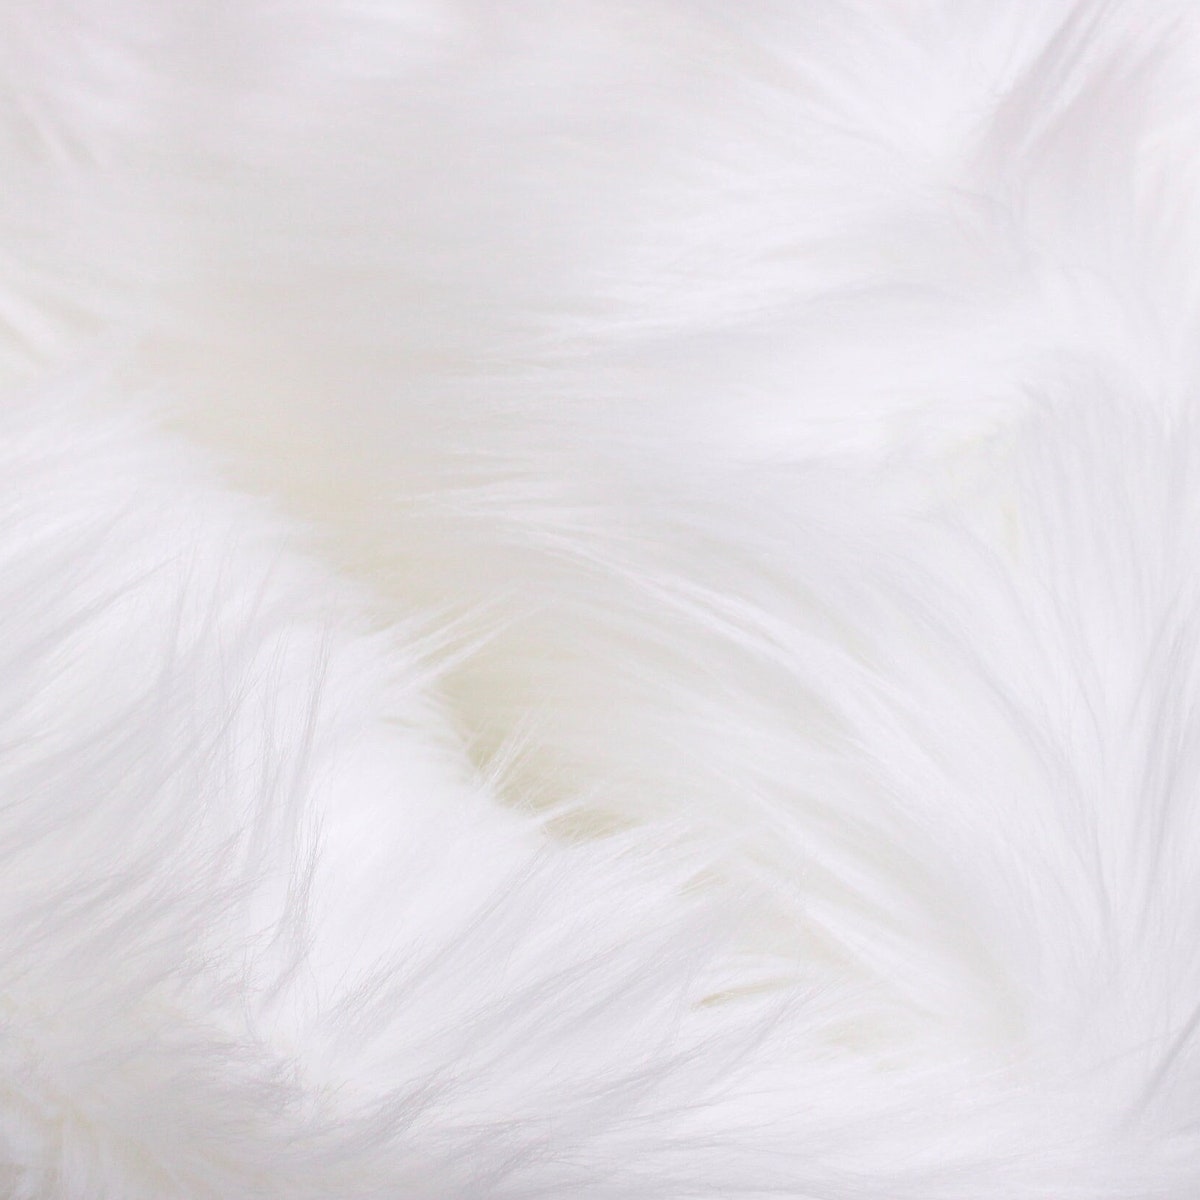 White Faux Fur 2 Pile, White Fur Fabric, Fursuit Fur